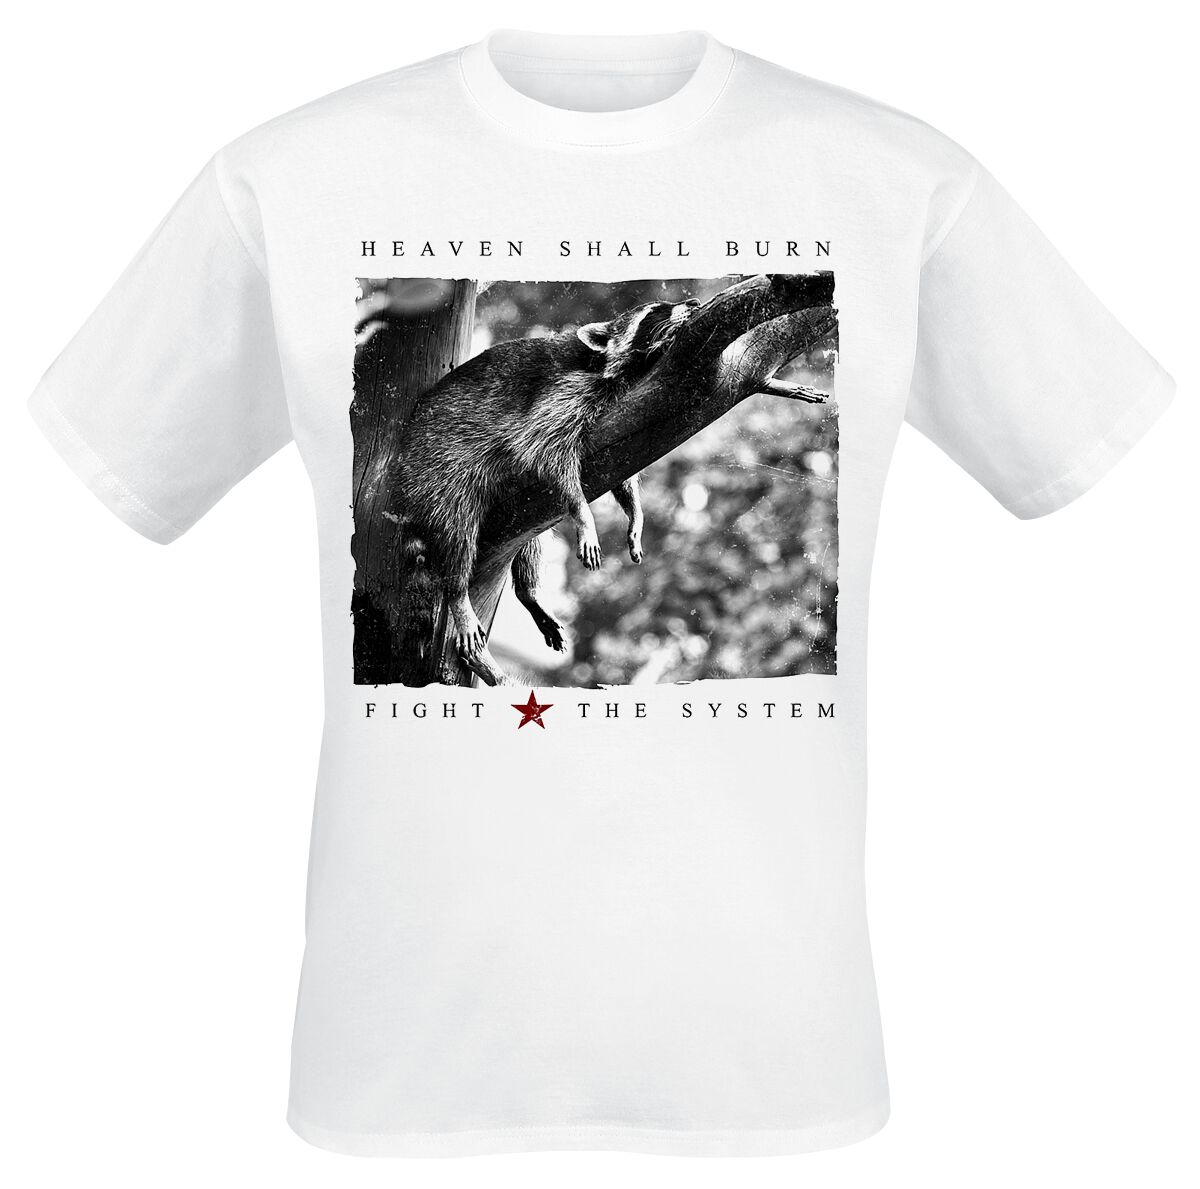 Heaven Shall Burn T-Shirt - Racoon - S bis XXL - für Männer - Größe S - weiß  - Lizenziertes Merchandise!